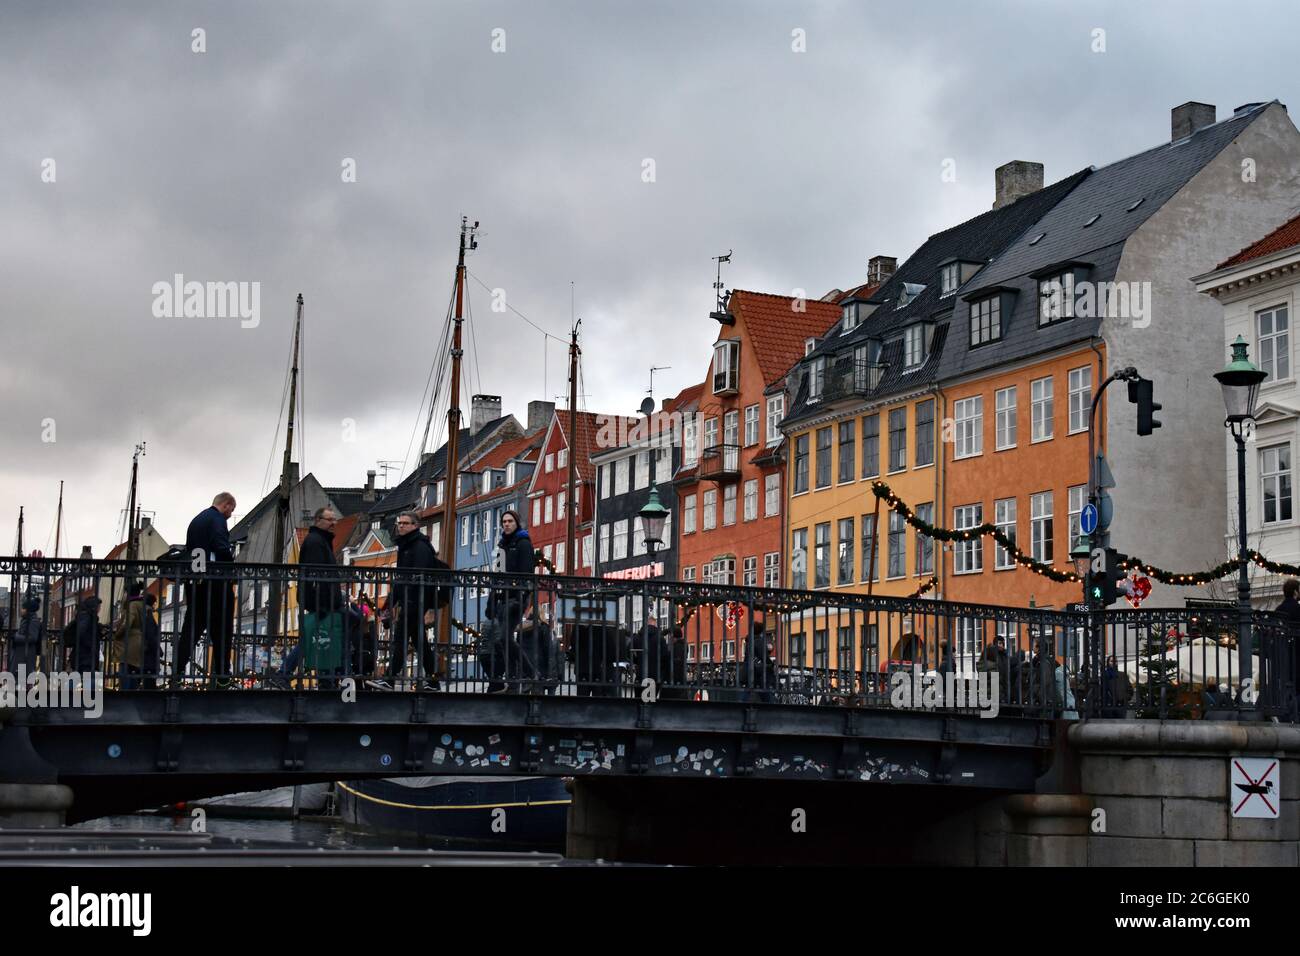 Les maisons de ville colorées sur le côté nord du canal de Nyhavn derrière le pont. Les mâts des voiliers peuvent également être vus contre le ciel gris. Banque D'Images